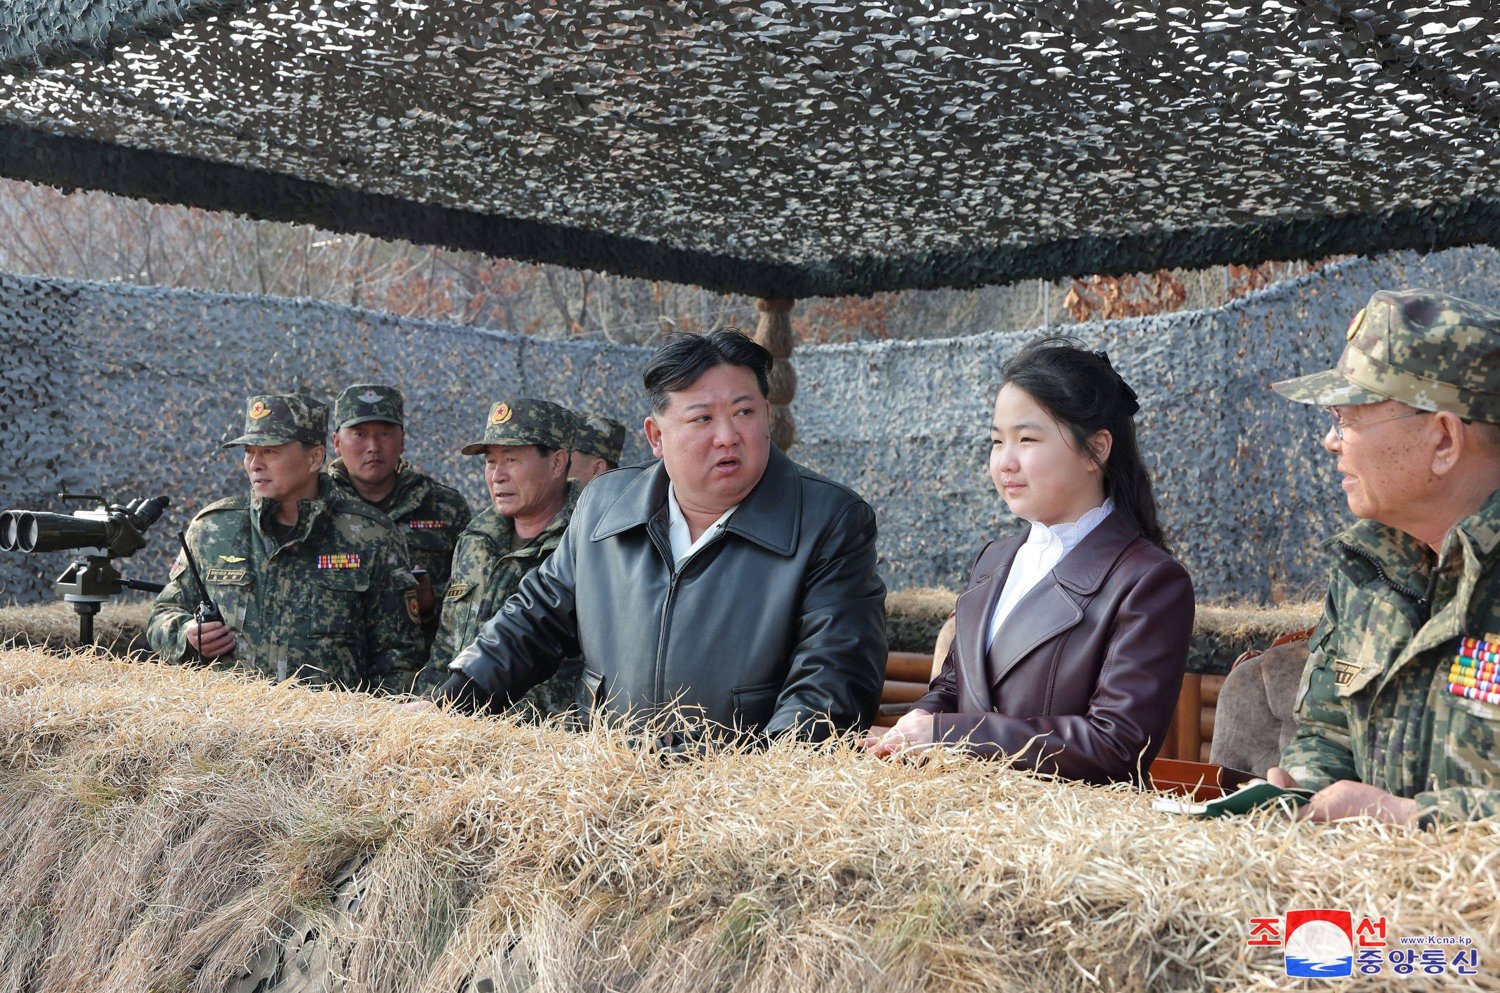 جو آي إلى جانب والدها كيم جونغ أون خلال مشاهدتهما تدريبات المظليين (أ.ف.ب)